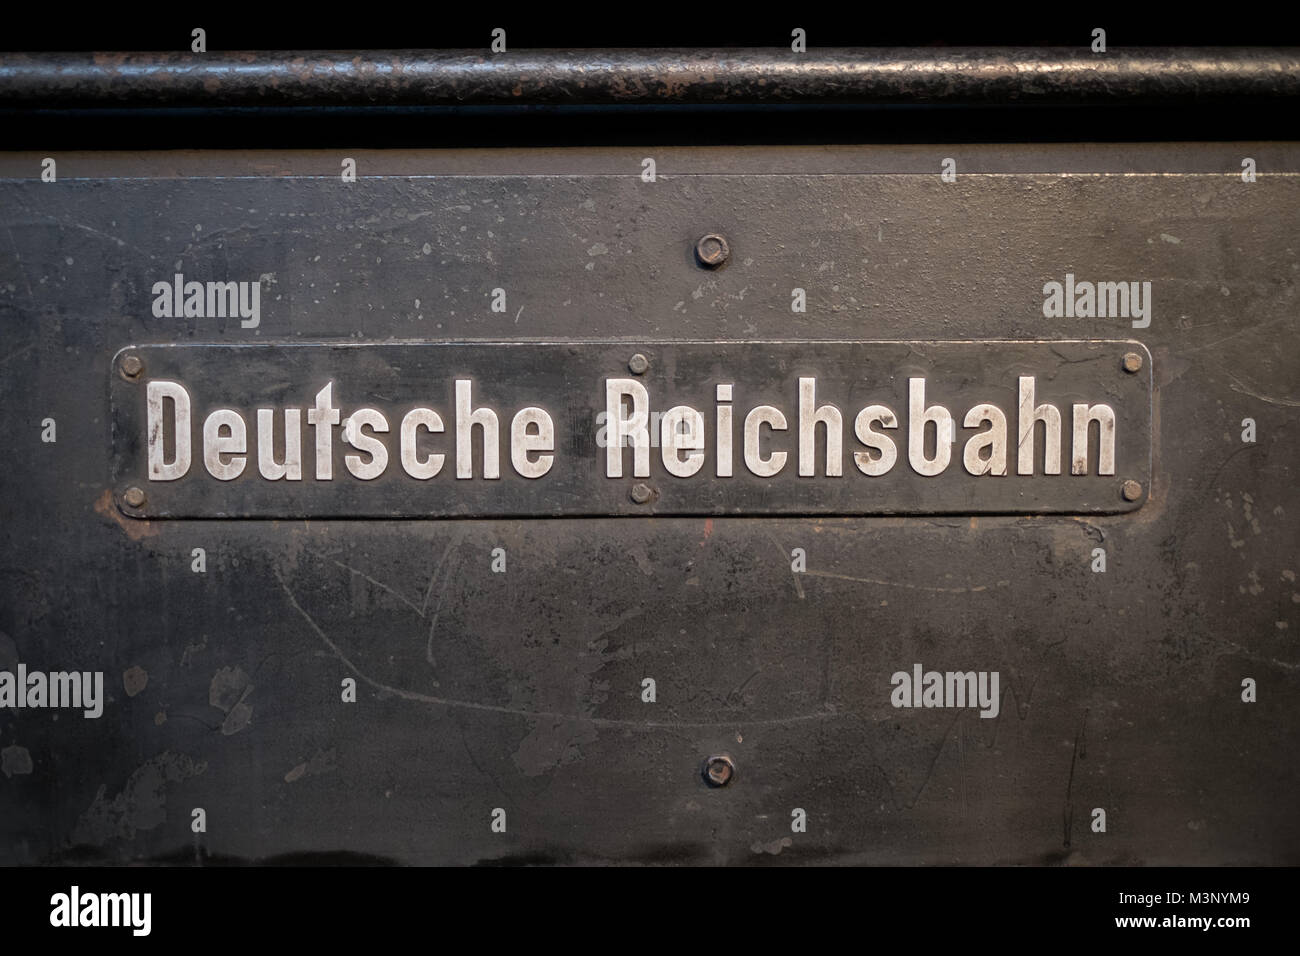 Berlin, Allemagne - Février 2018 : Ancien logo de l'entreprise ferroviaire allemande (Deutsche Reichsbahn) au Musée allemand de la technologie (Deutsches Technikmuseum) Banque D'Images